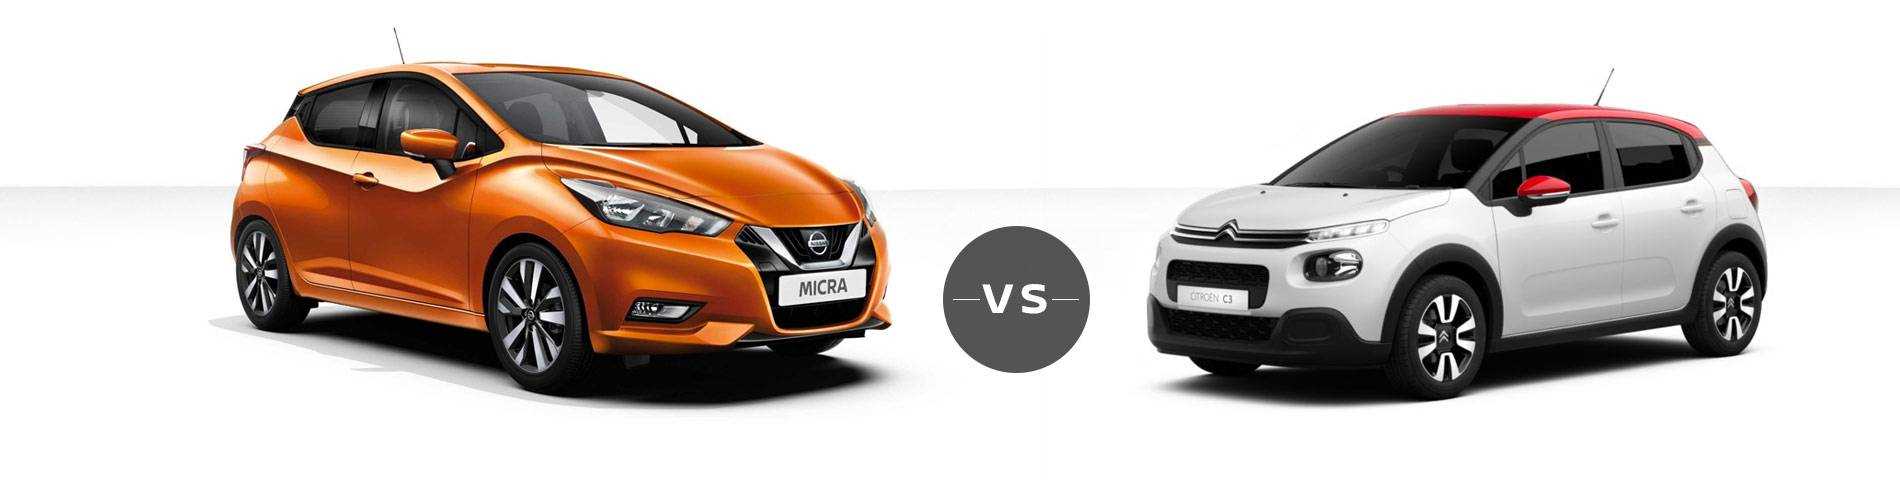 Nissan Micra vs Citroen C3